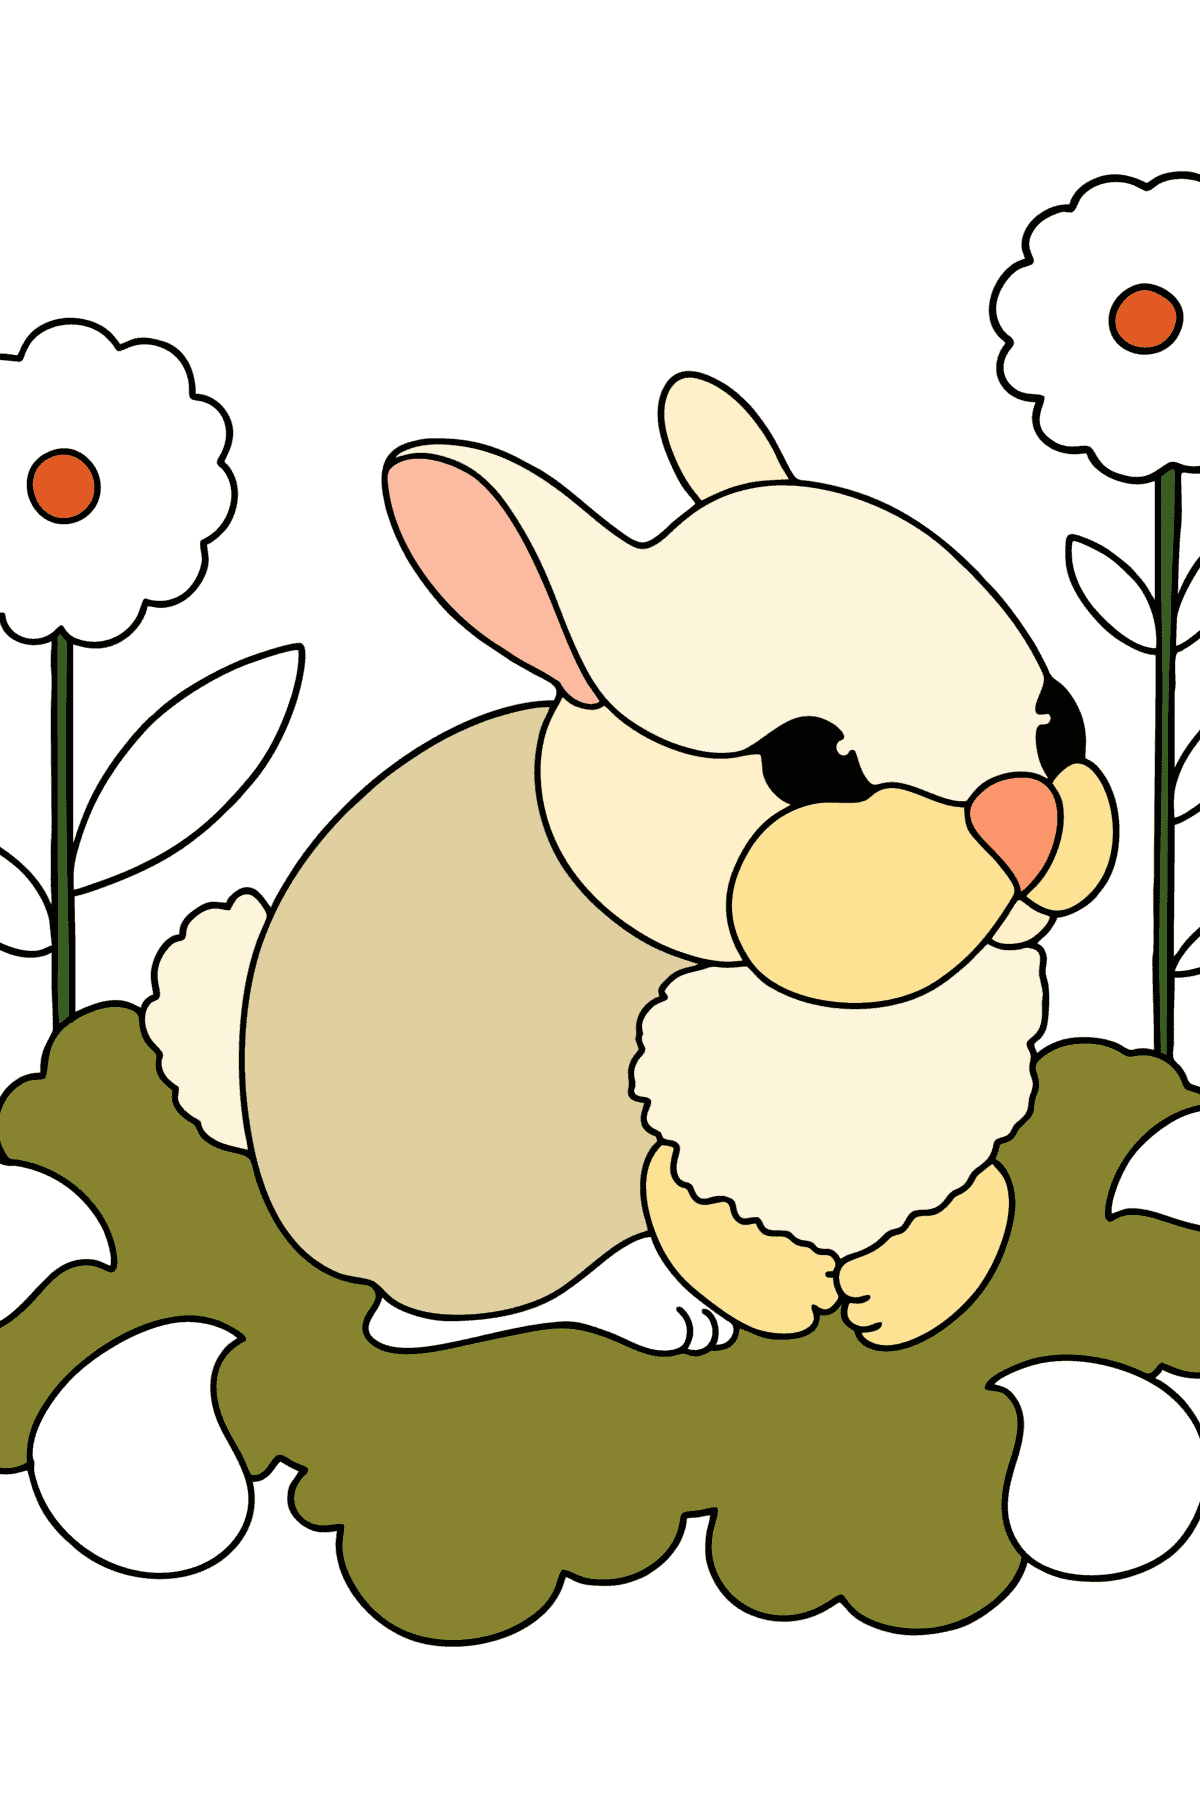 Tegning til fargelegging baby kanin - Tegninger til fargelegging for barn